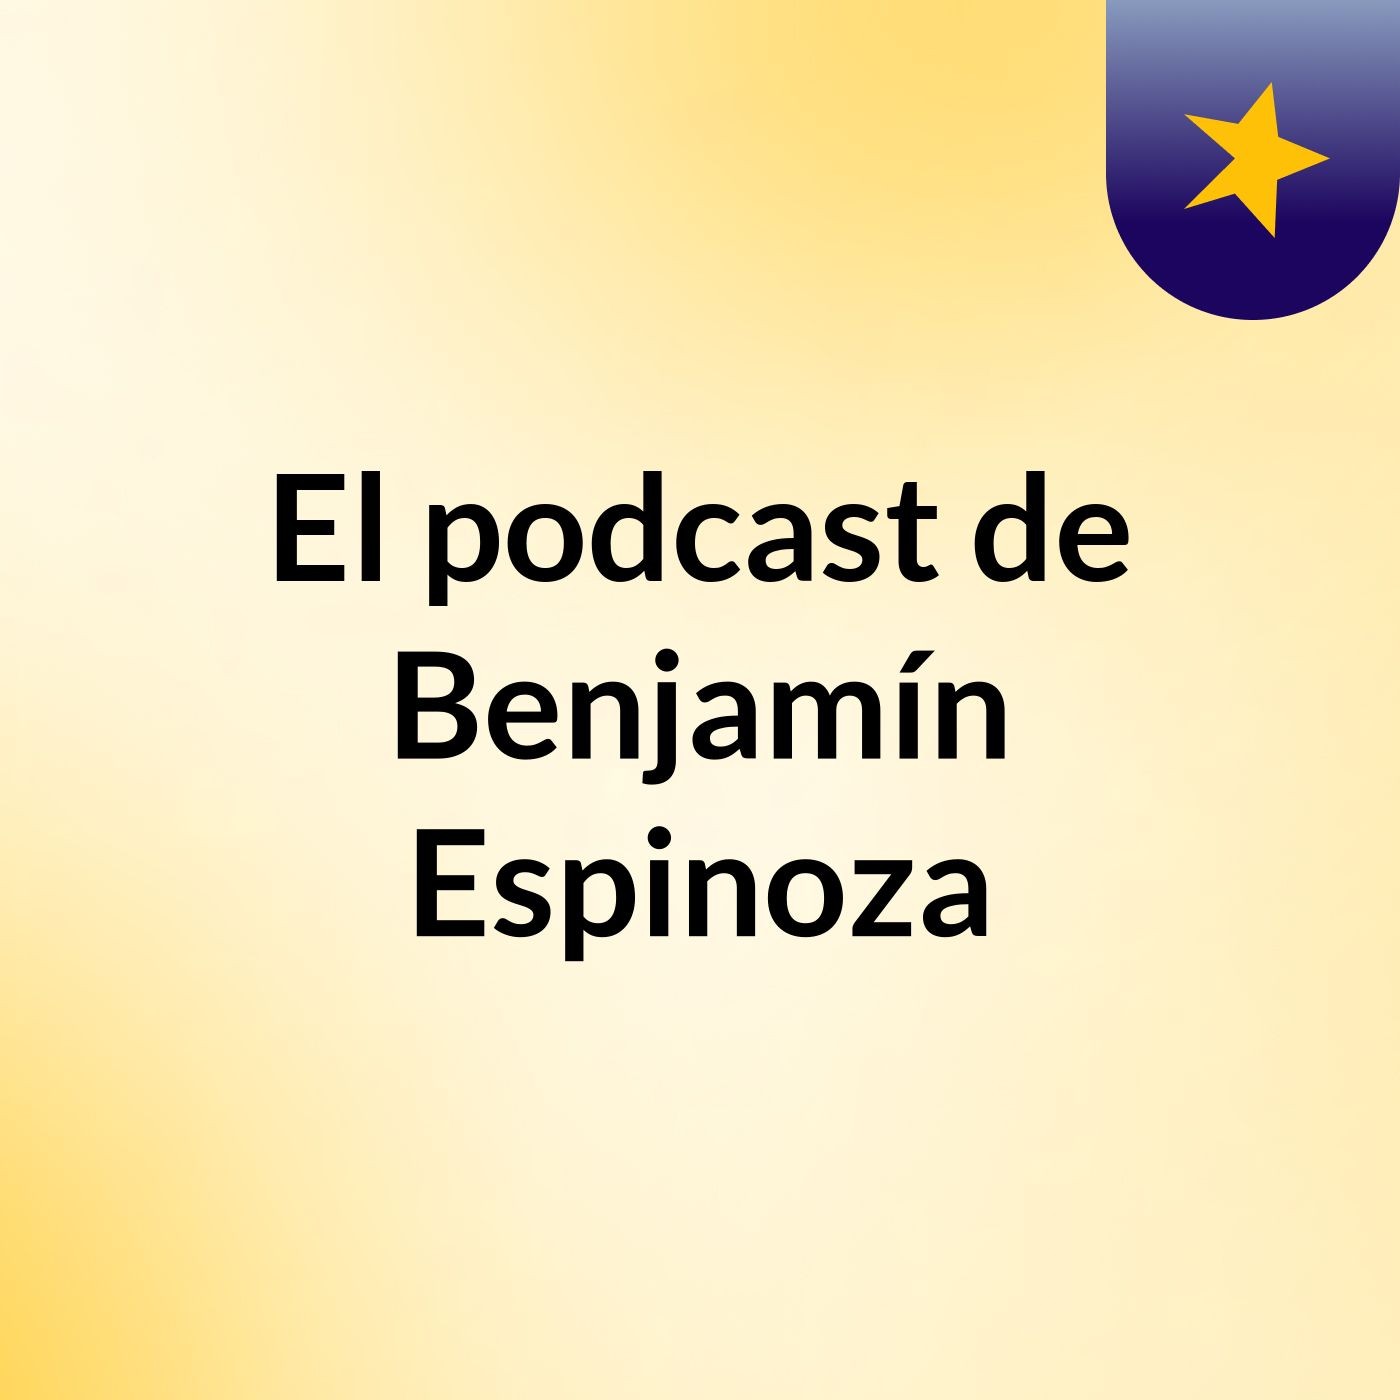 El podcast de Benjamín Espinoza